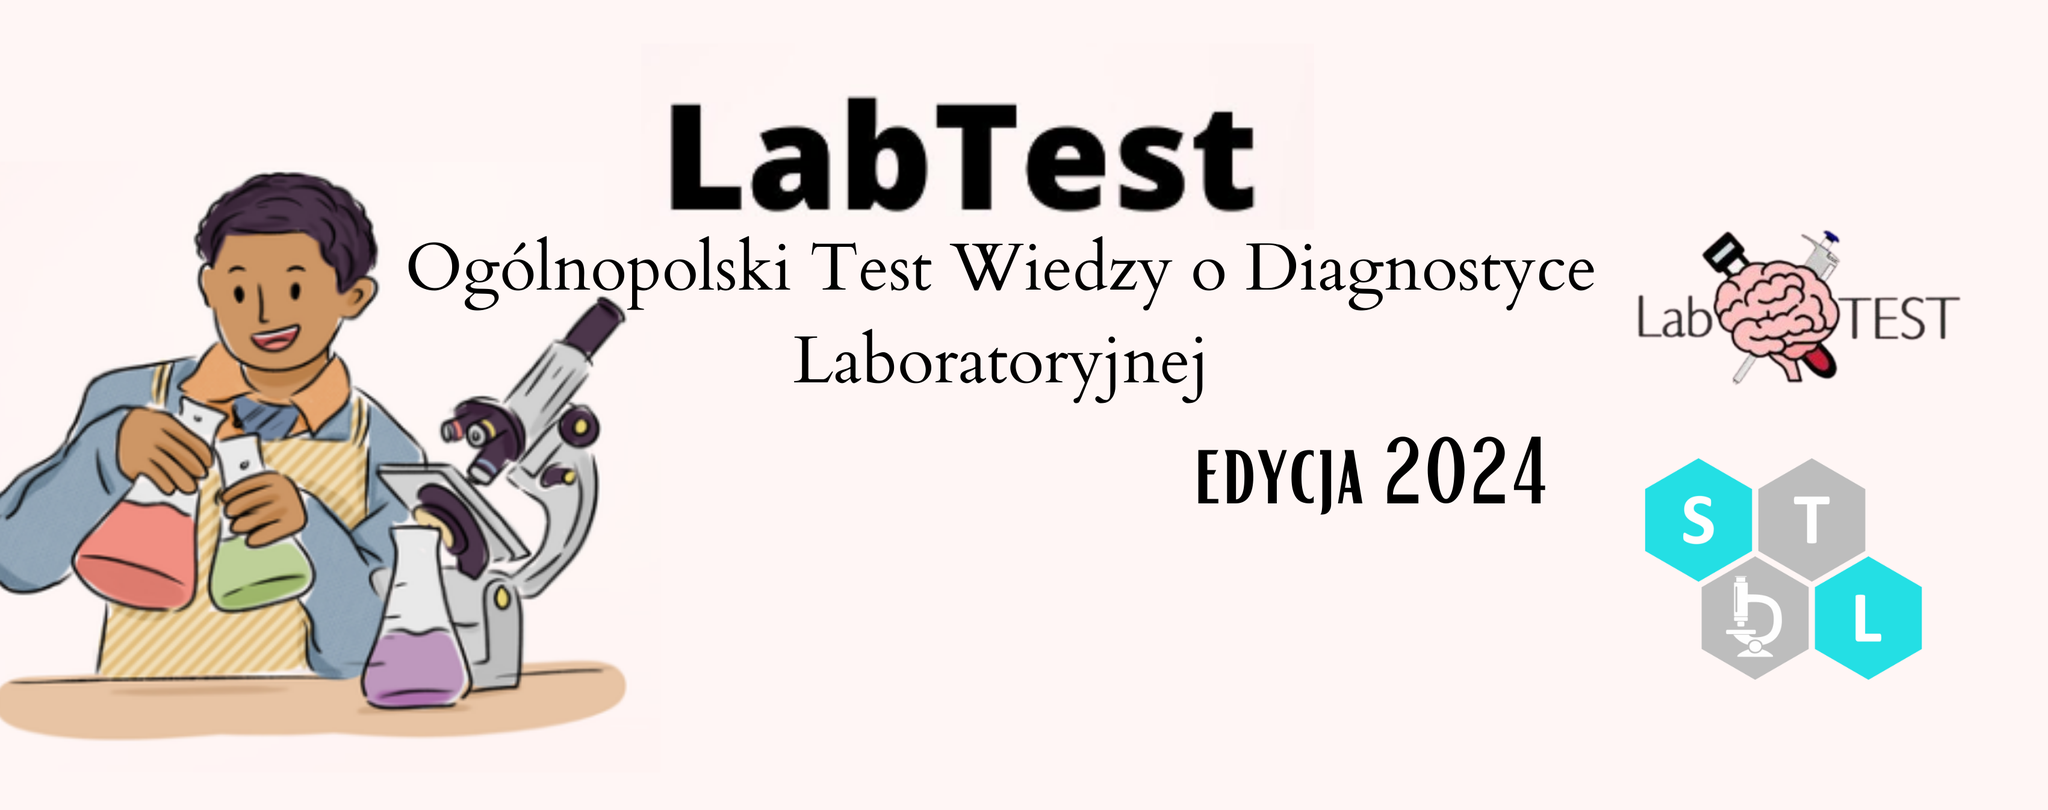 LabTest – Ogólnopolski konkurs wiedzy o diagnostyce laboratoryjnej pod patronatem Krajowej Izby Diagnostów Laboratoryjnych